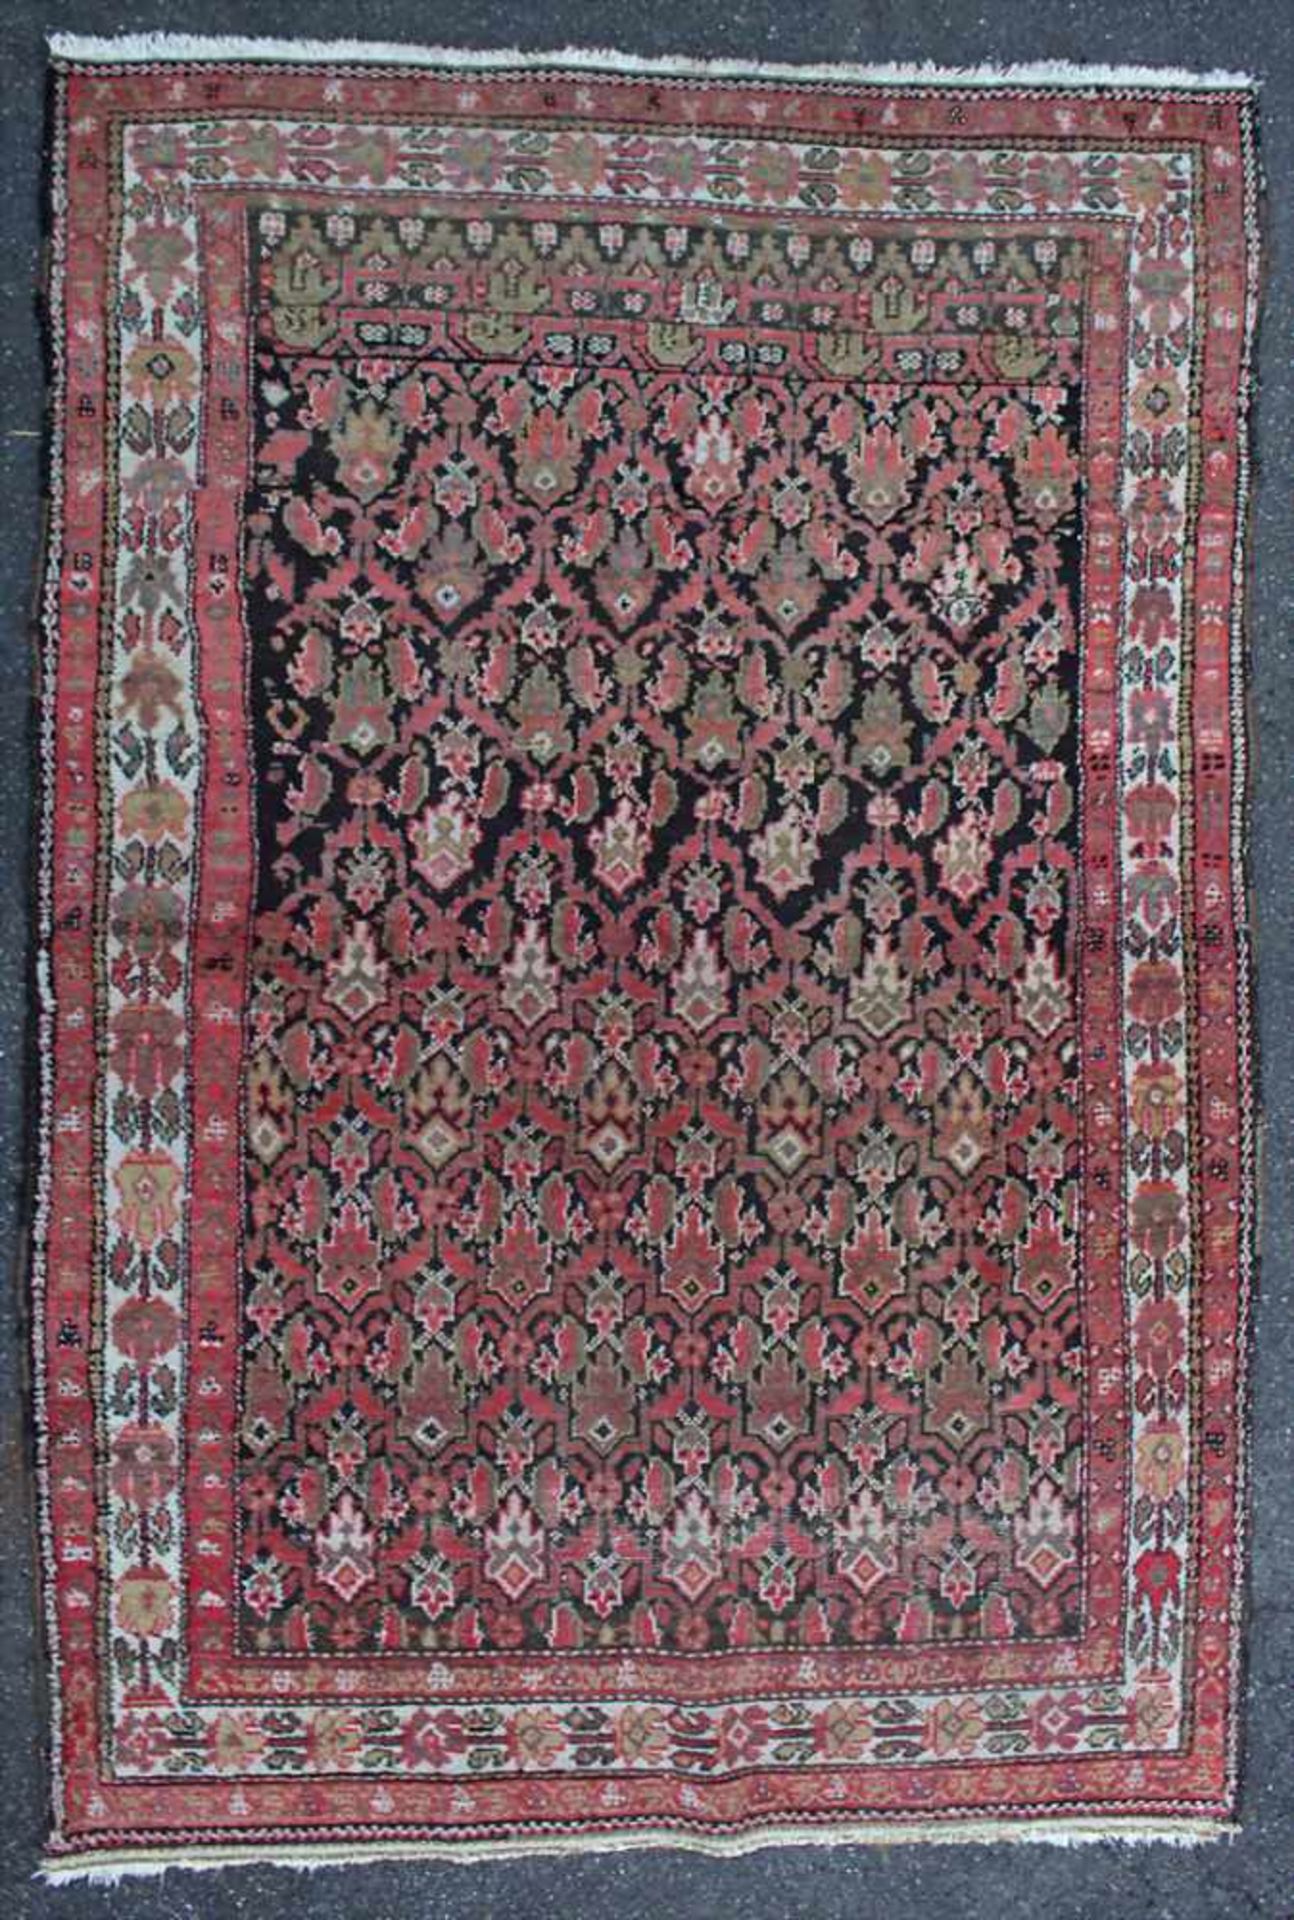 Orientteppich / An oriental carpetMaterial: Wolle auf Wolle, Maße: 192 x 132 cm, Zustand: partiell